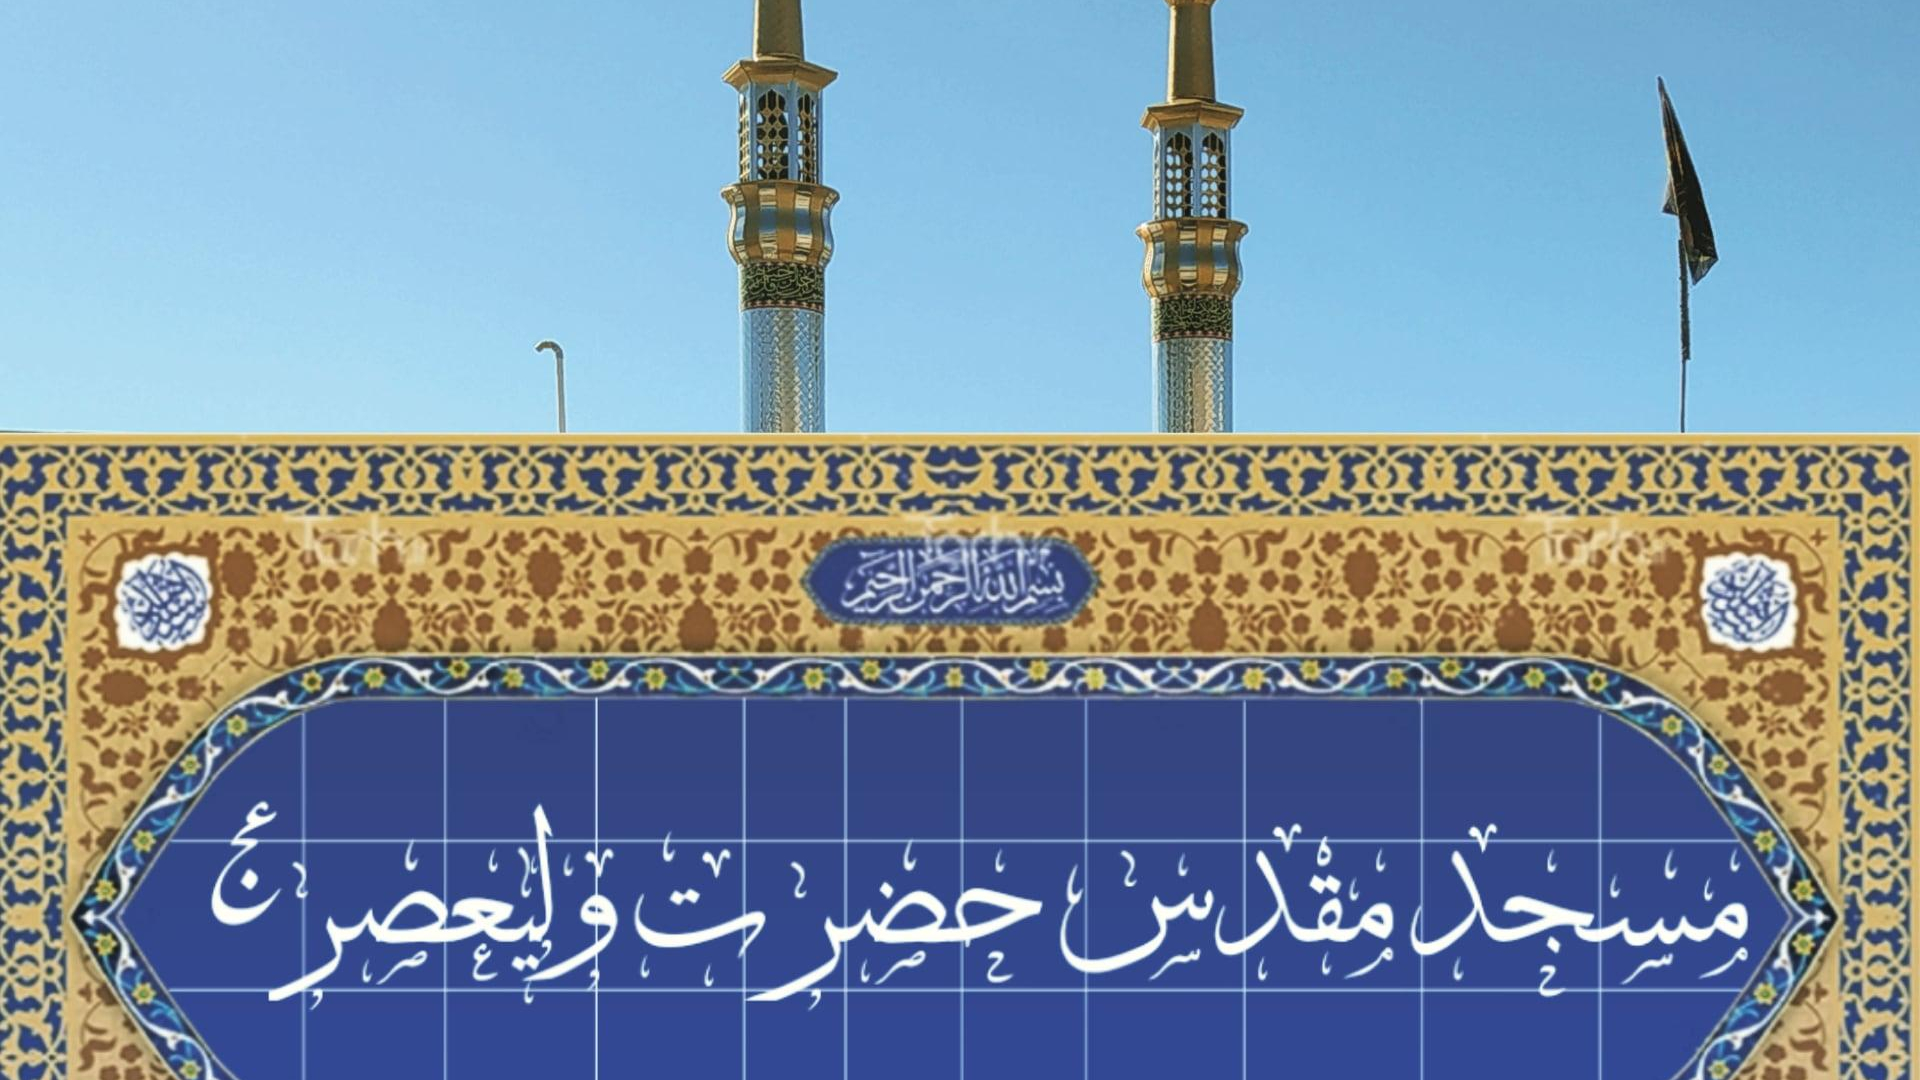 مسجد مقدس حضرت ولیعصر عج و حسینیه حضرت علی اصغر ع